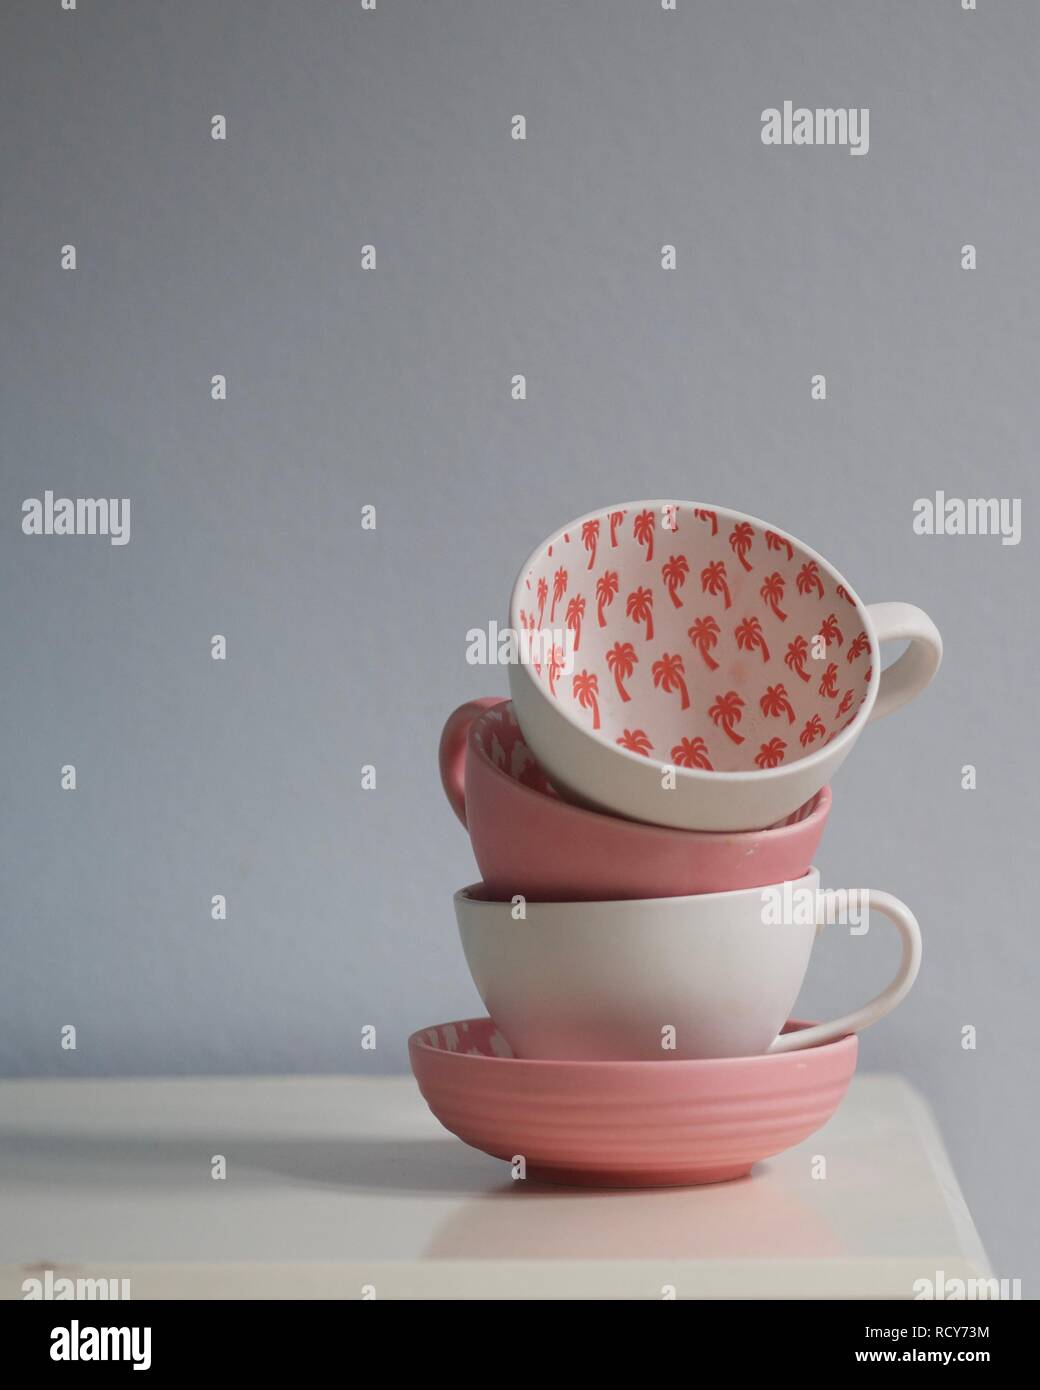 In prossimità di corallo rosa e bianco tazze tè impilati sul tavolo bianco. Tazze Decorate con Palm tree pattern. Colore Pantone dell'anno 2019 - coralli viventi. Foto Stock